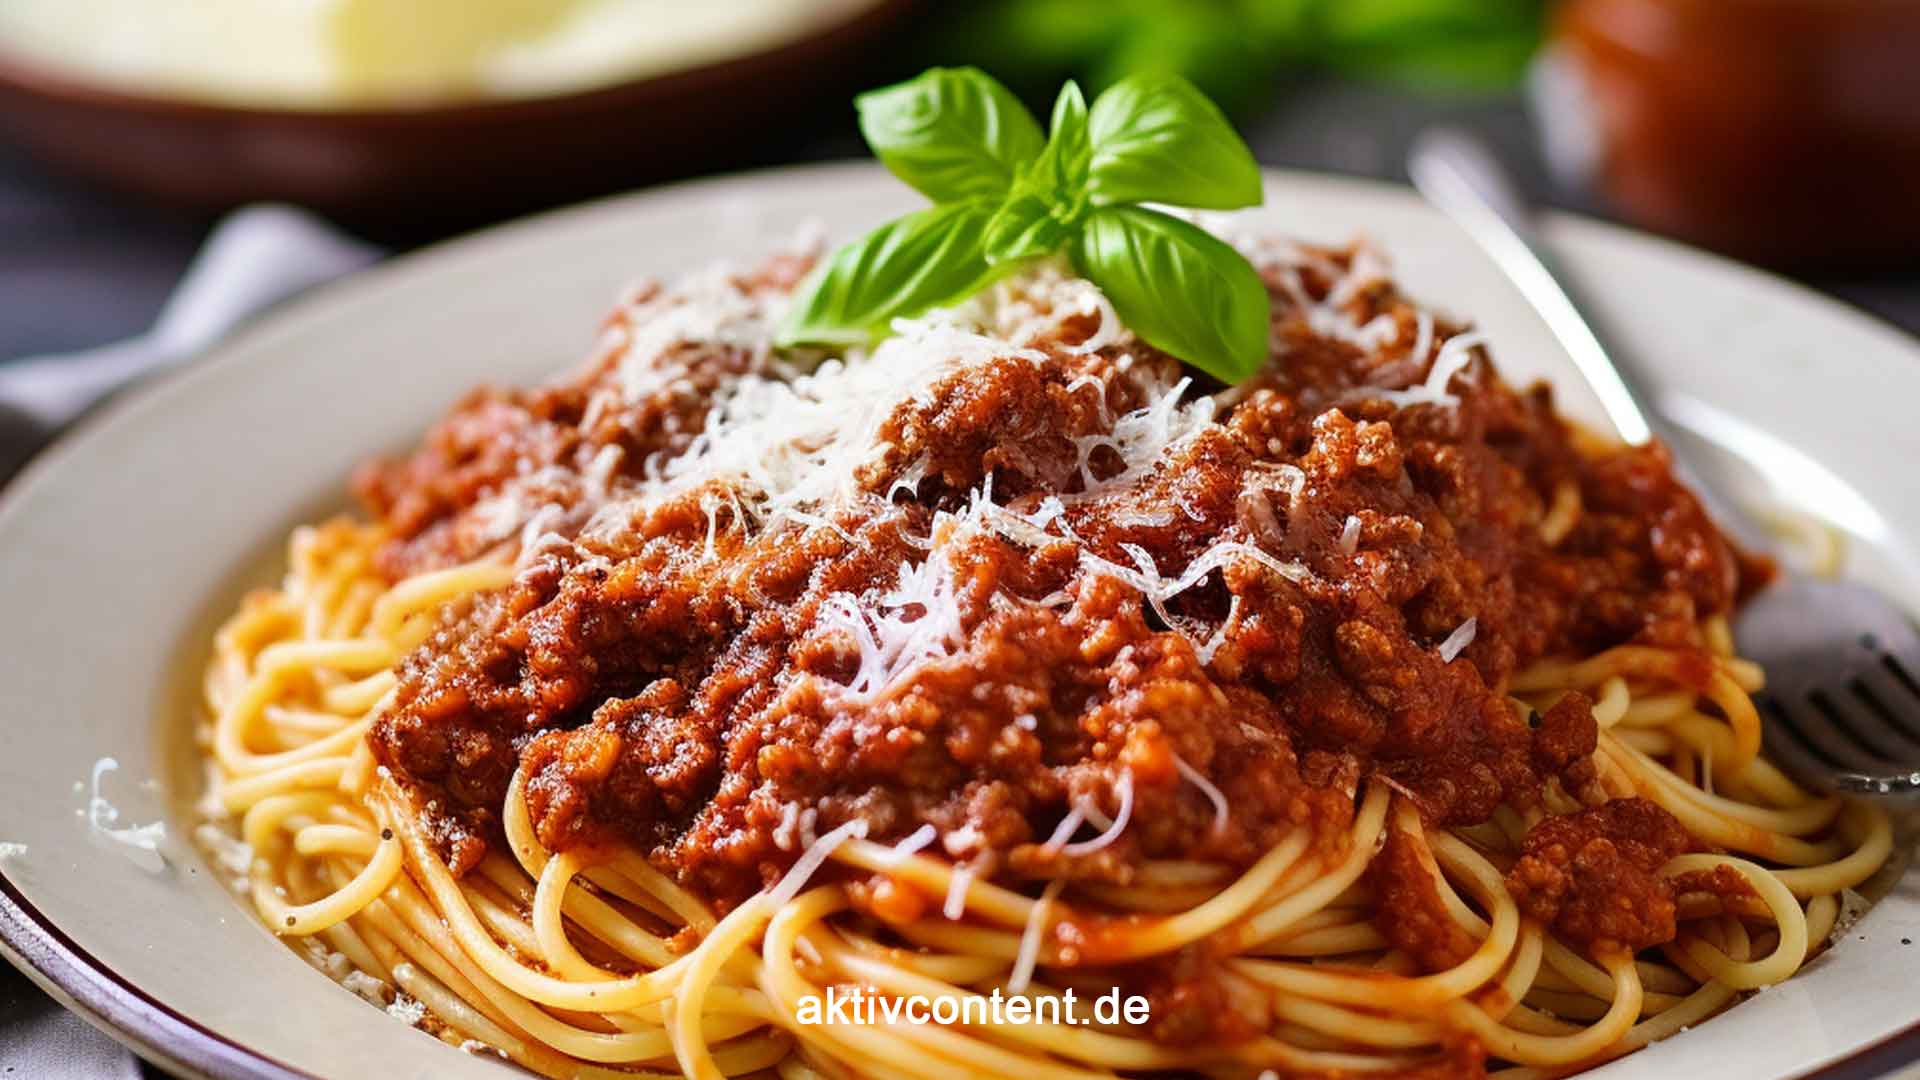 Spaghetti Bolognese Tauche ein in den Geschmack Italiens - Spaghetti Bolognese - entdecke das Geheimnis hinter einer authentischen Spaghetti Bolognese und lerne, wie du die perfekte Bolognese-Sauce zubereitest. Genieße den Duft von frischen Zutaten, das Aroma von Kräutern und das herzhafte Hackfleisch, das auf al dente gekochten Spaghetti tanzt. Hol dir das Stück Italien in deine Küche und verwöhne dich mit einem Klassiker, der immer wieder begeistert. Mach dich bereit für eine Geschmacksexplosion!